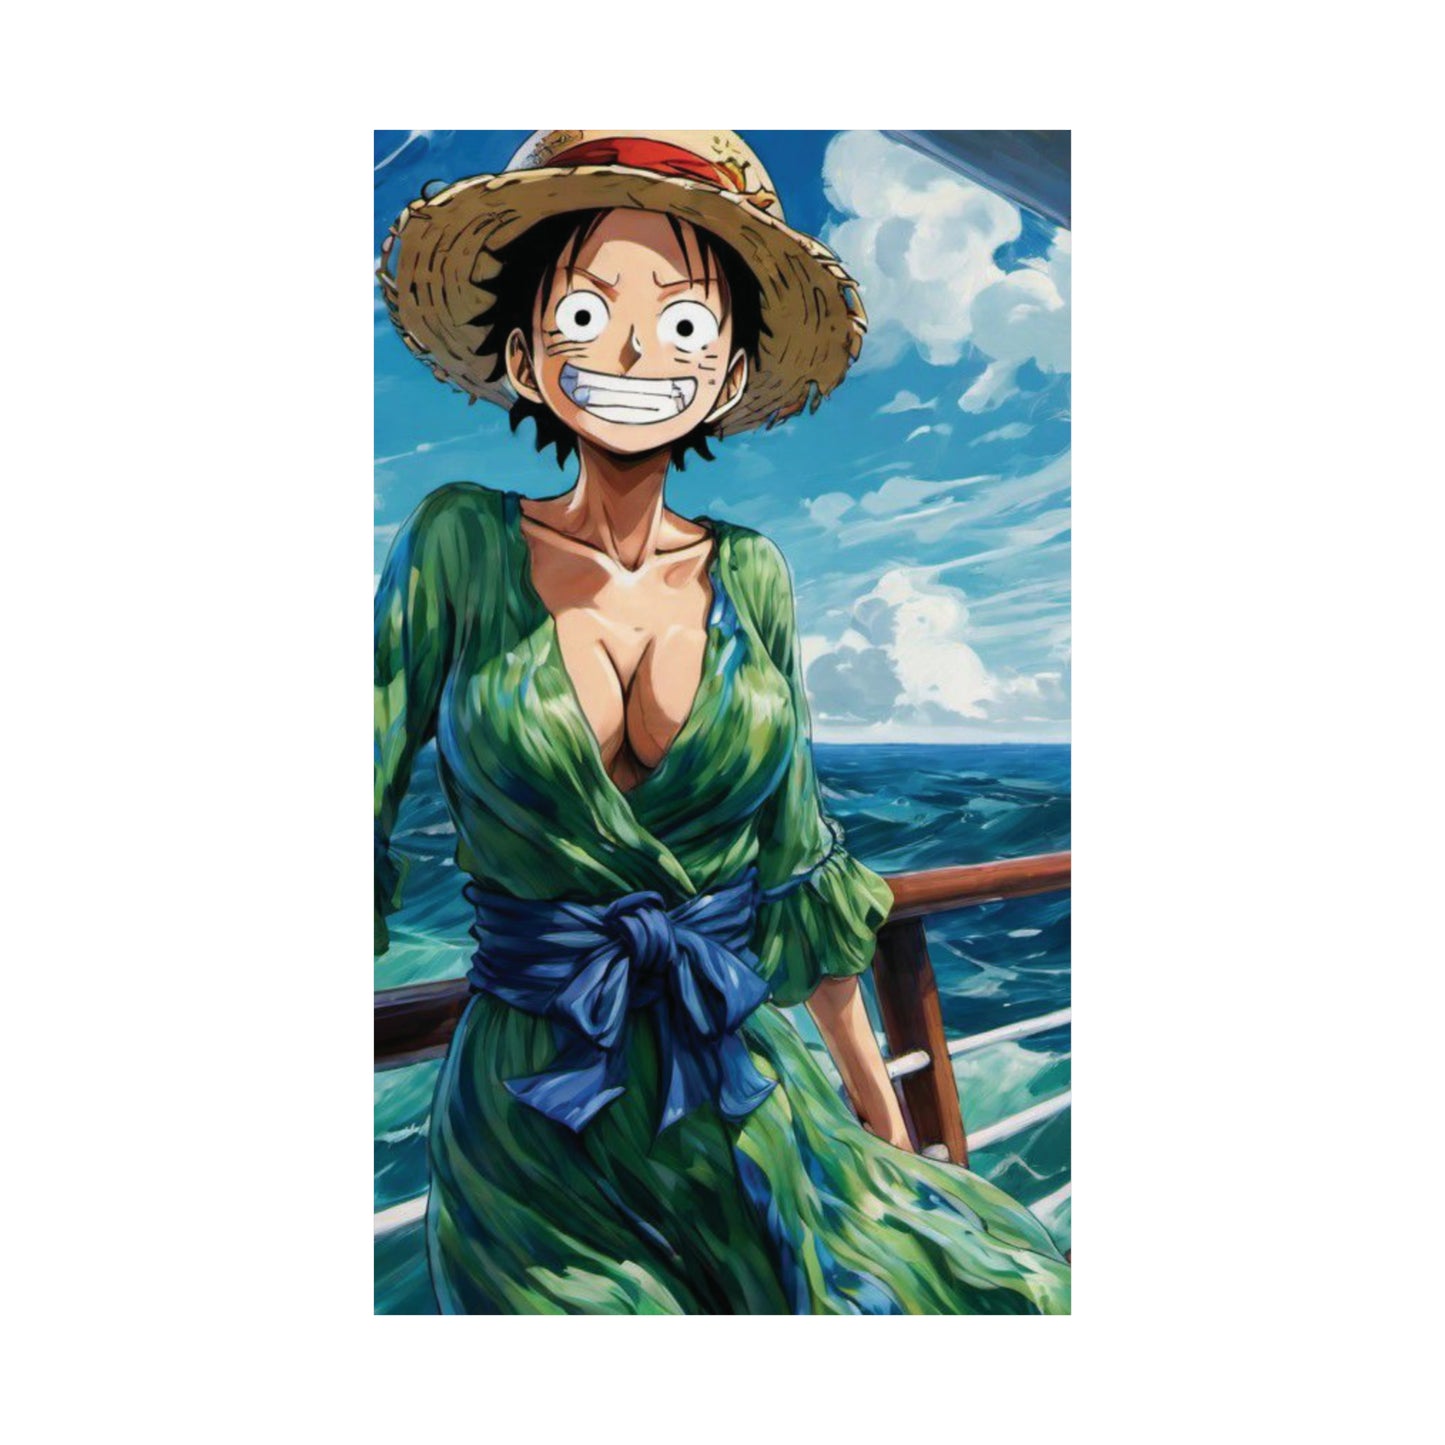 Impressionist Seas - One Piece Odyssey WallPaper